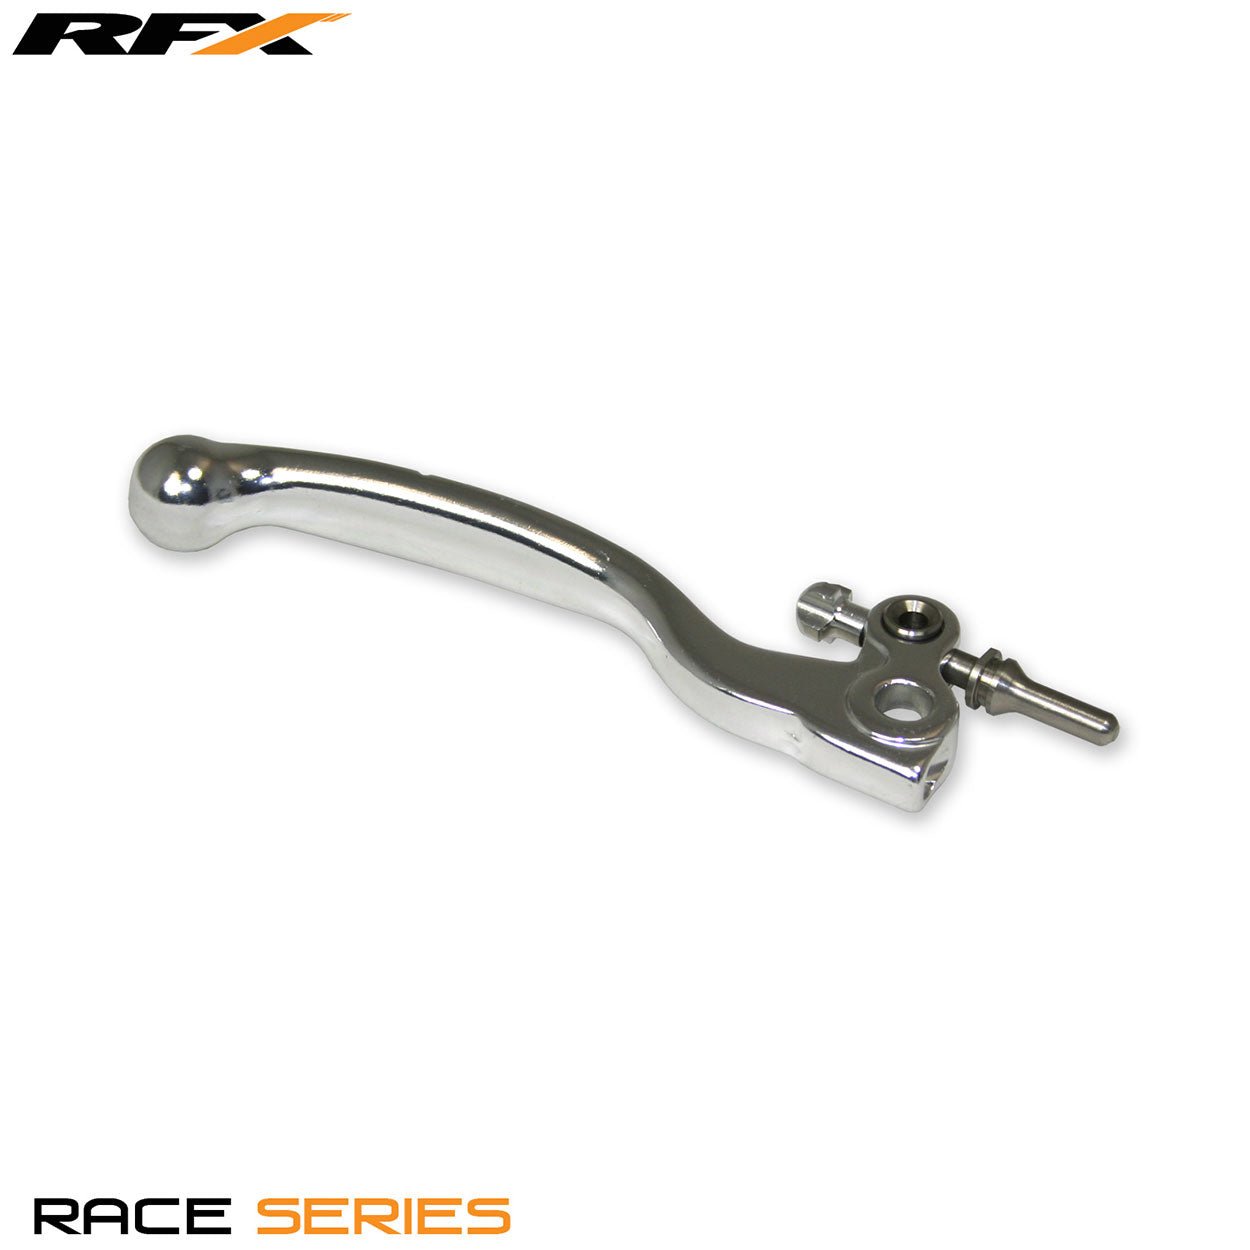 RFX Race Front Brake Lever KTM SX65 12-13 (Including Plunger) - Silver - RFX